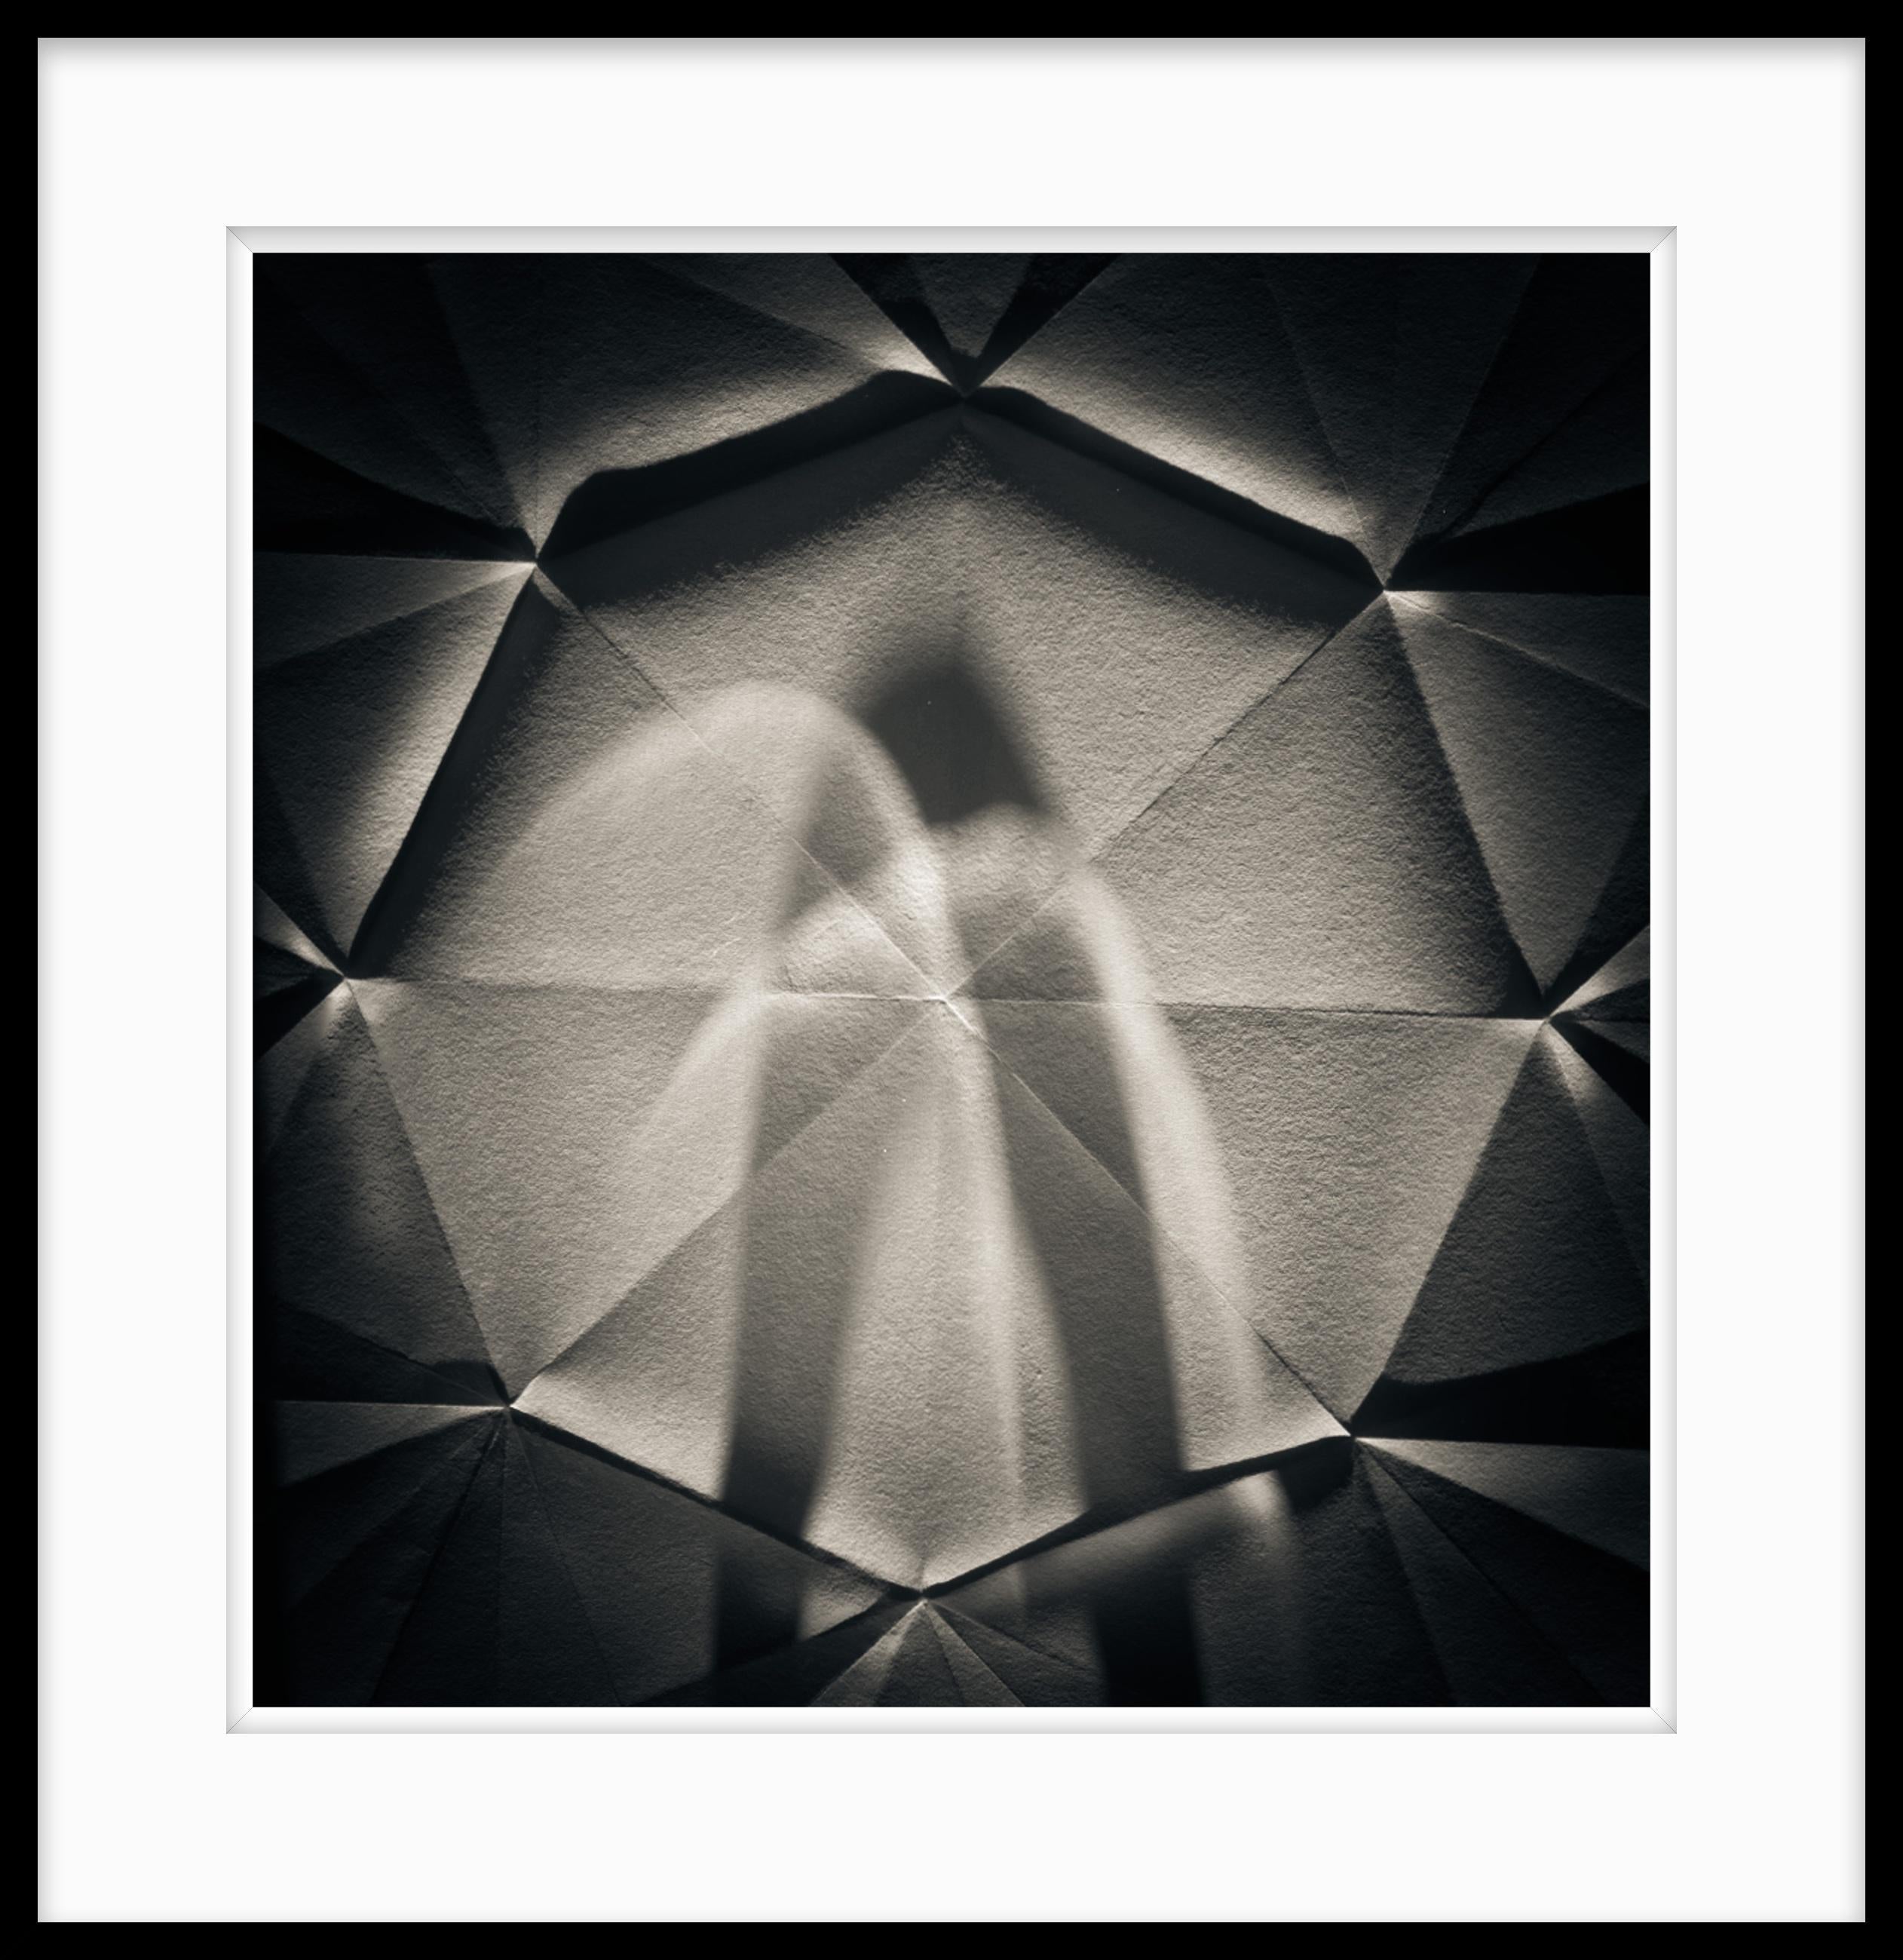 Limitierte Auflage 1 / 10 20 x 24 Schwarz-Weiß-Fotografie - Origami Abstrakt #73 – Photograph von Howard Lewis